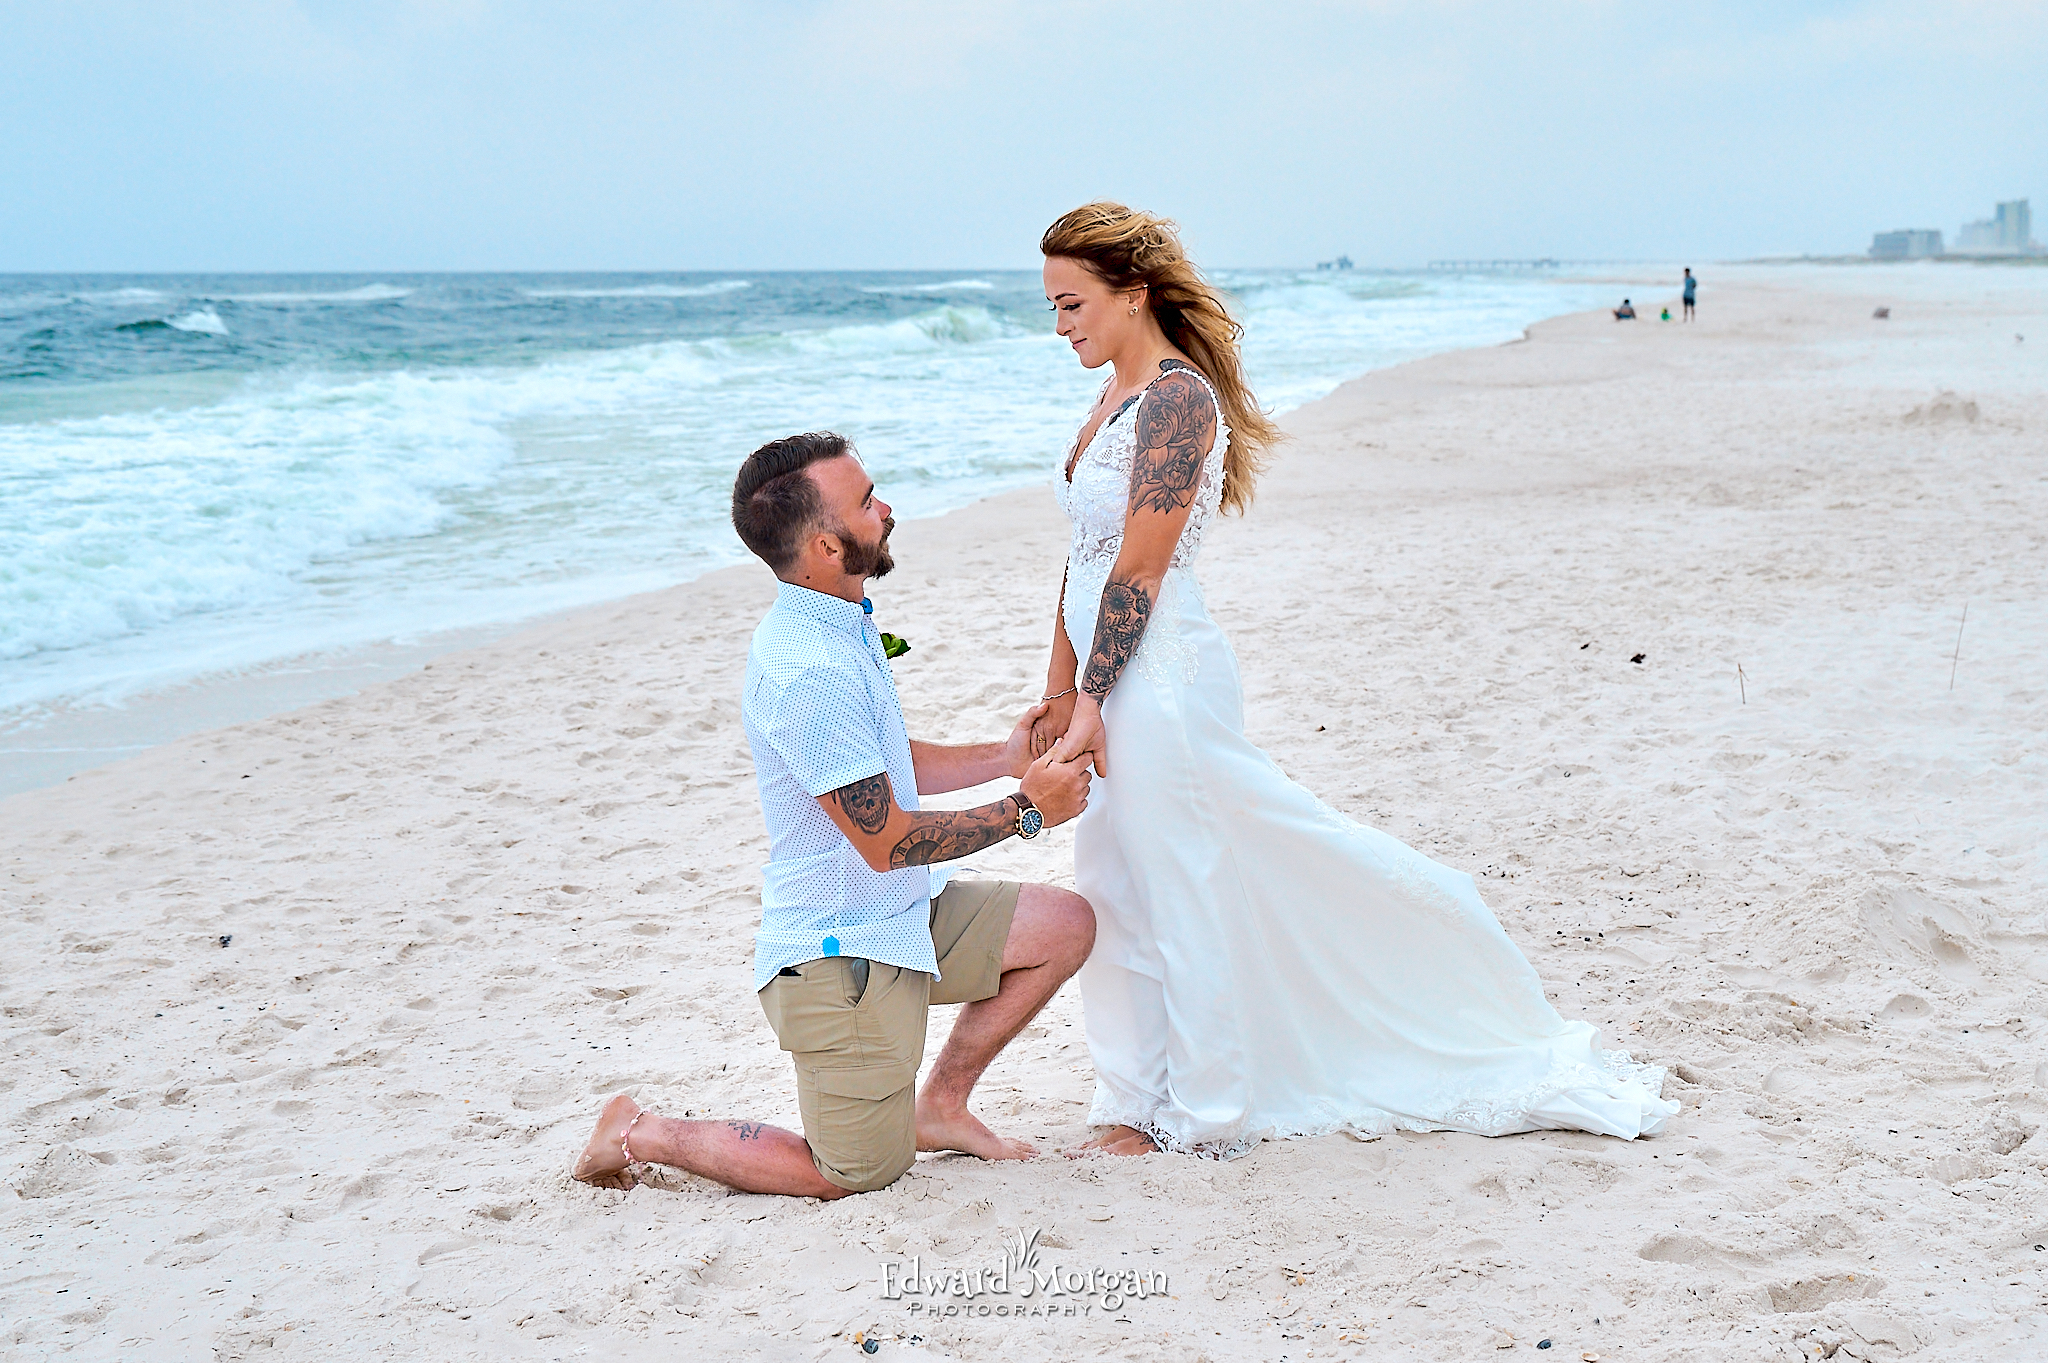 Wedding minister beach photos